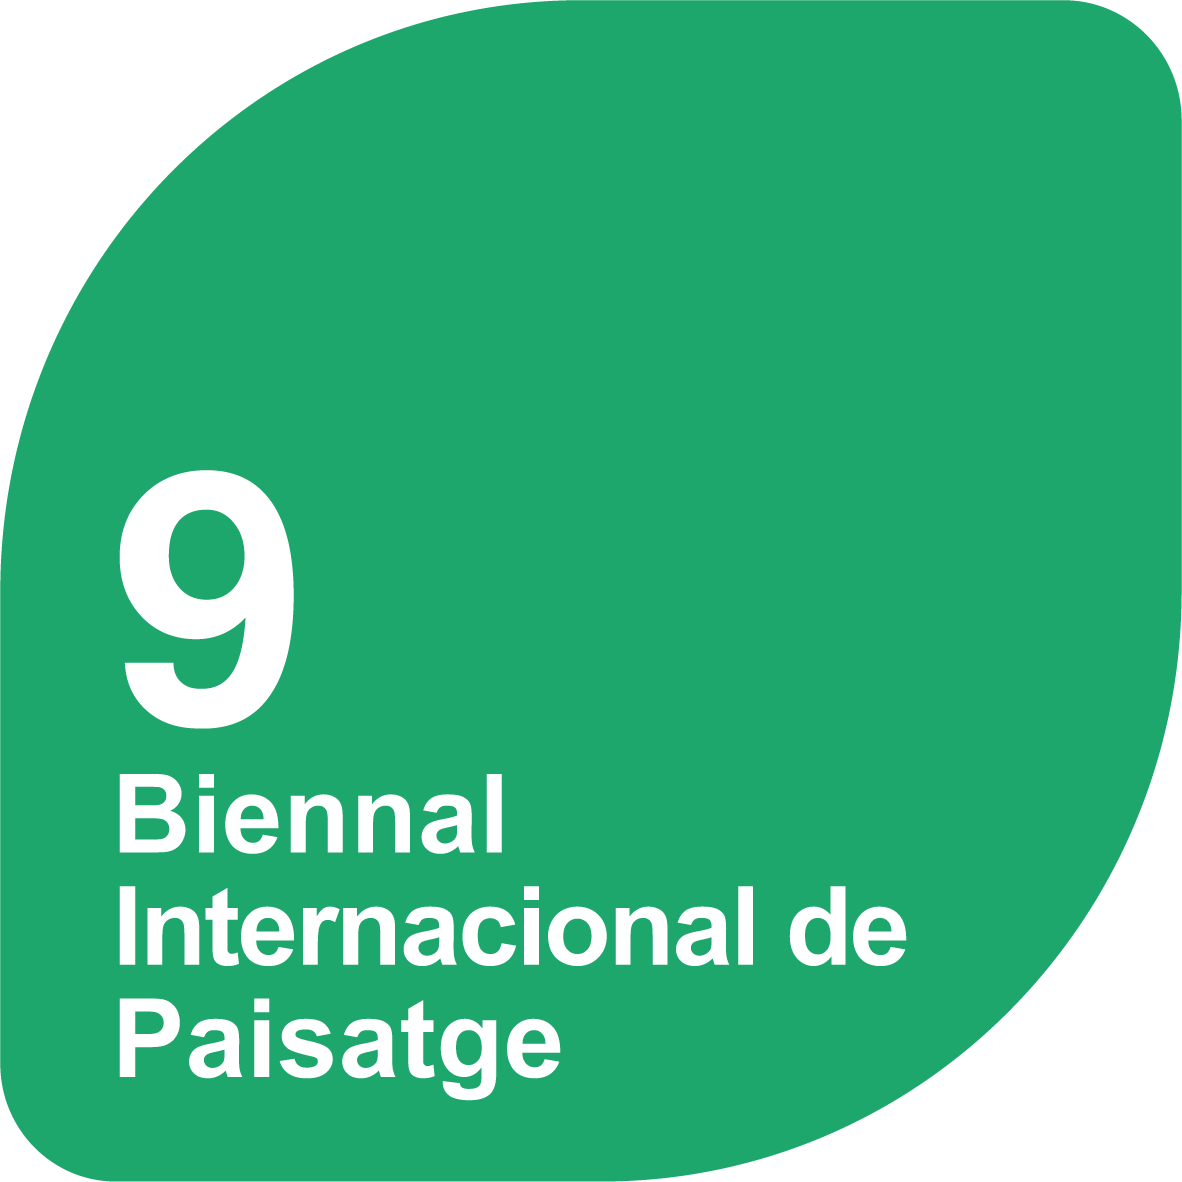 9a Biennal Internacional de Paisatge